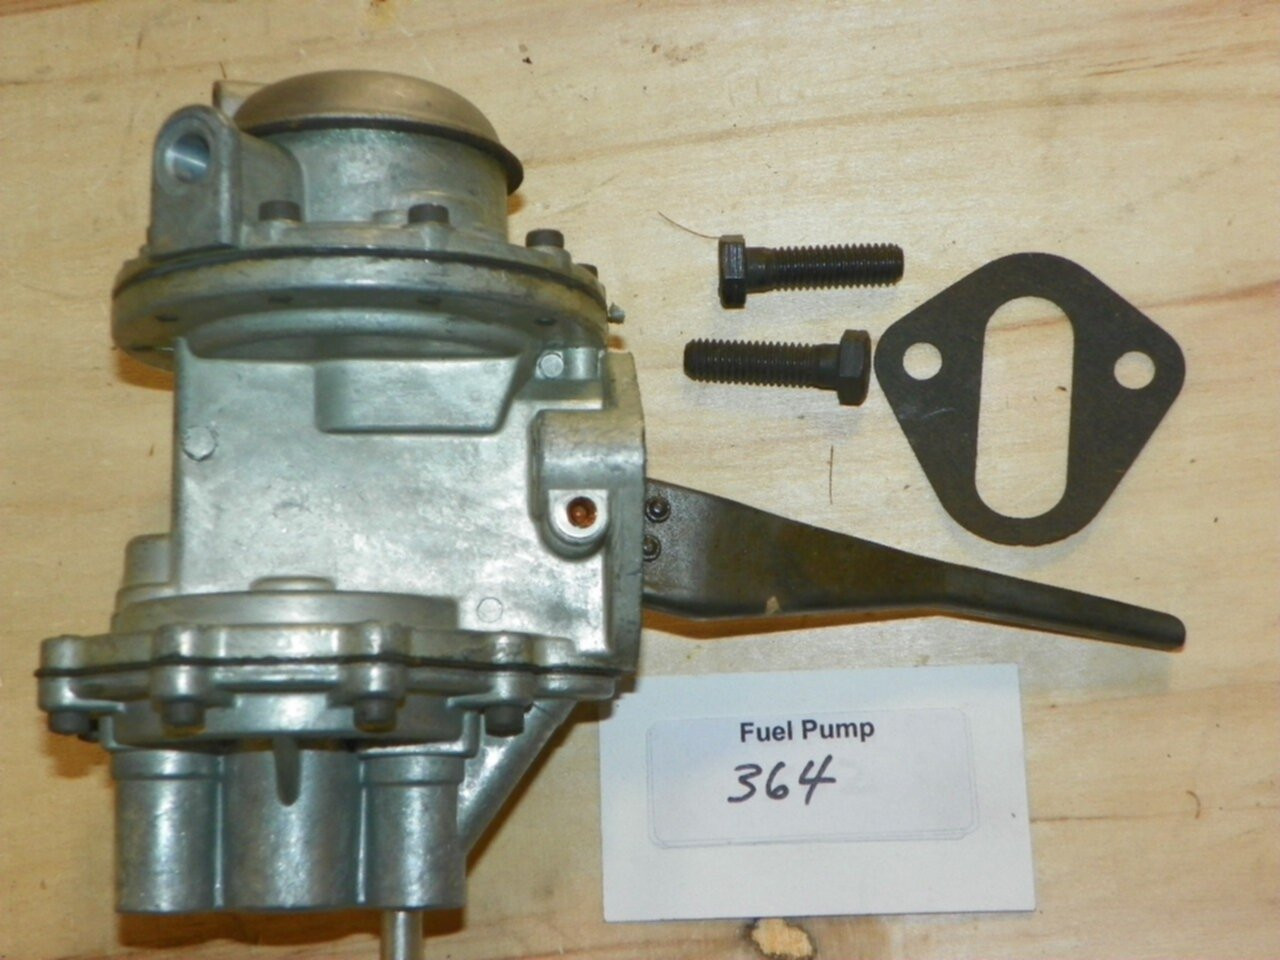 AMC Rambler V8 1967 Mechanical Fuel Pump Part No.: 364